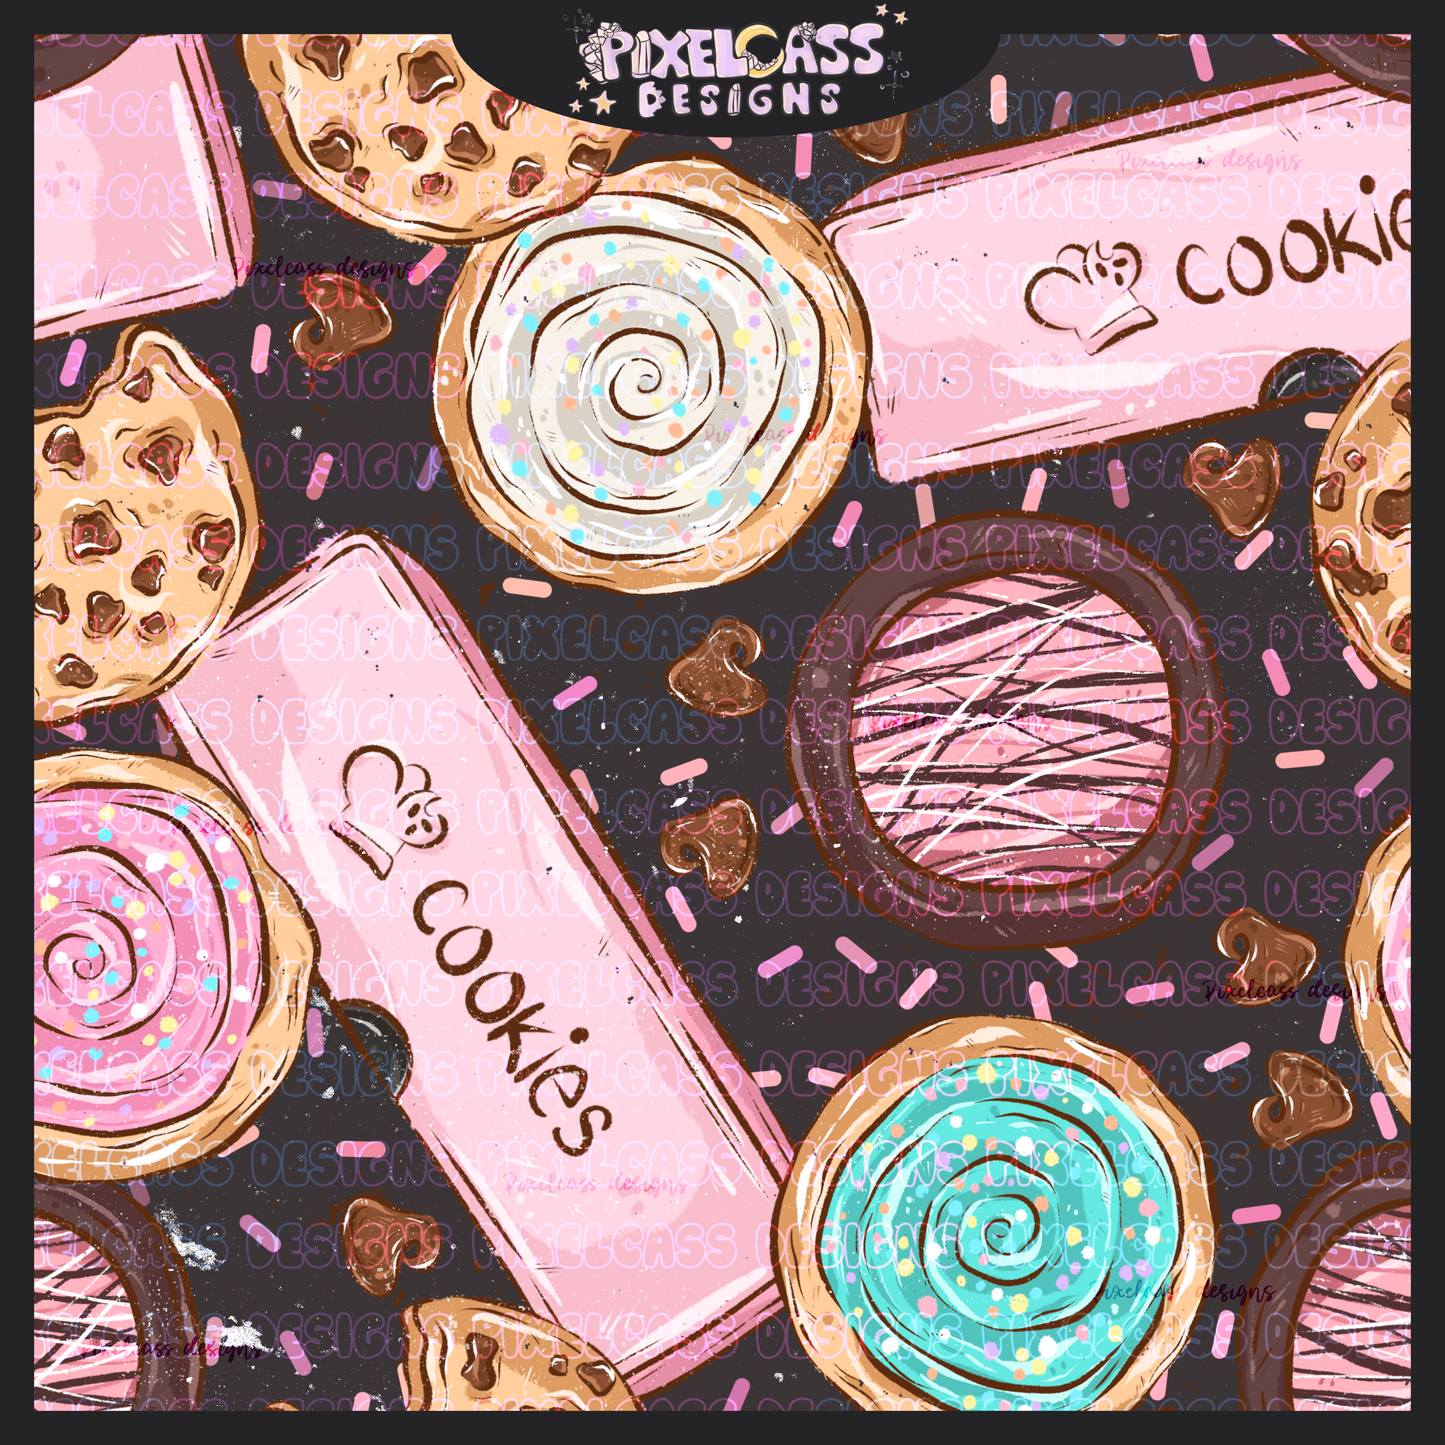 Pink Box Cookies